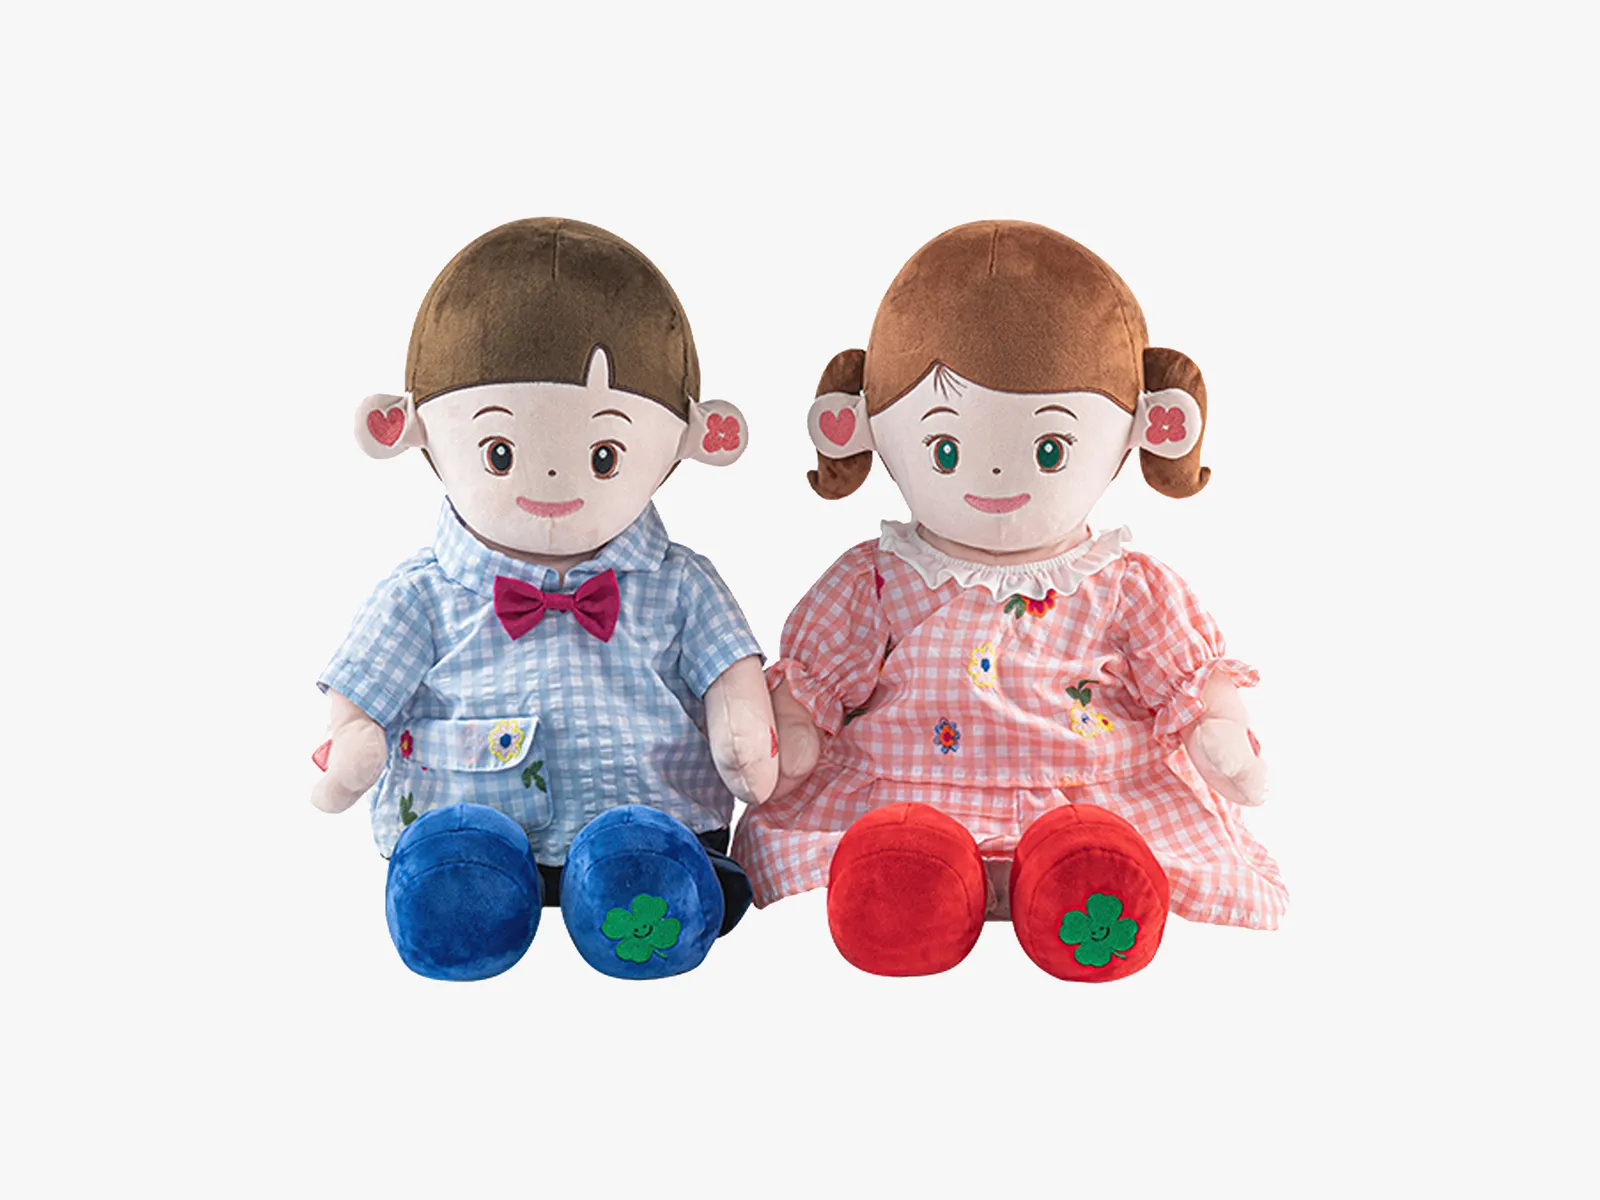 hydol-child-dolls-gear.webp